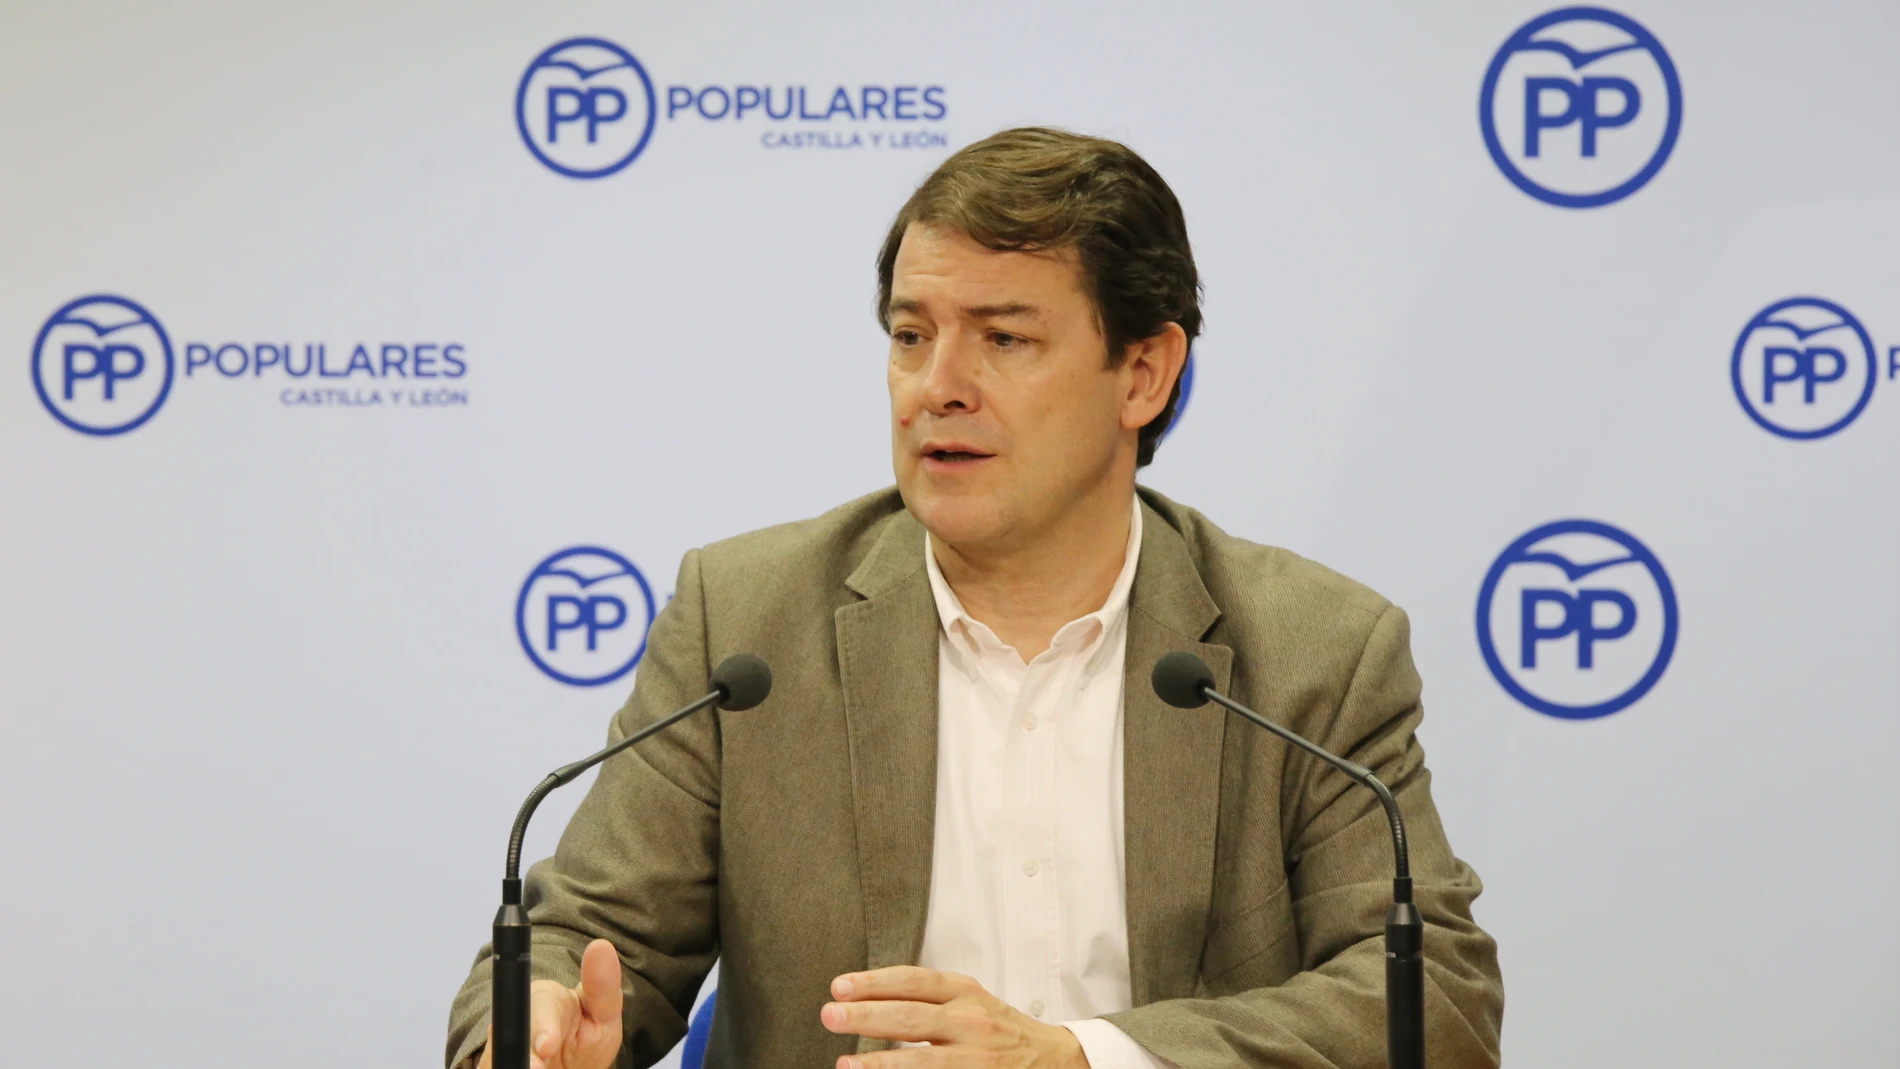 El presidente autonómico del PP, Alfonso Fernández Mañueco, analiza los resultados de las elecciones generales